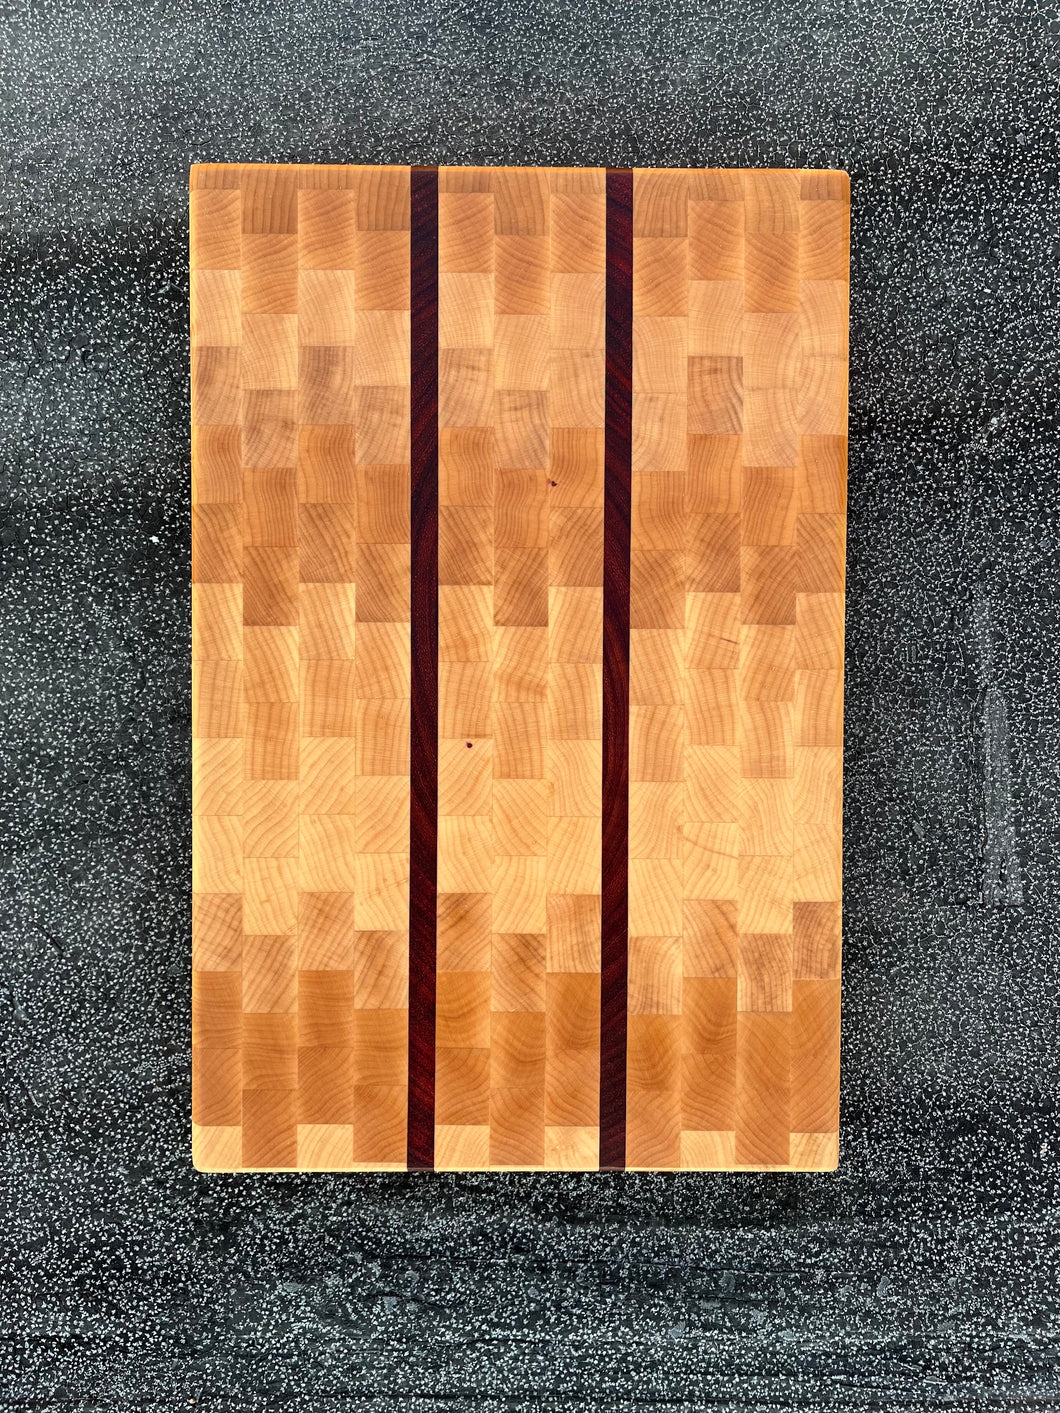 Maple & Paduak End grain cutting board - 15